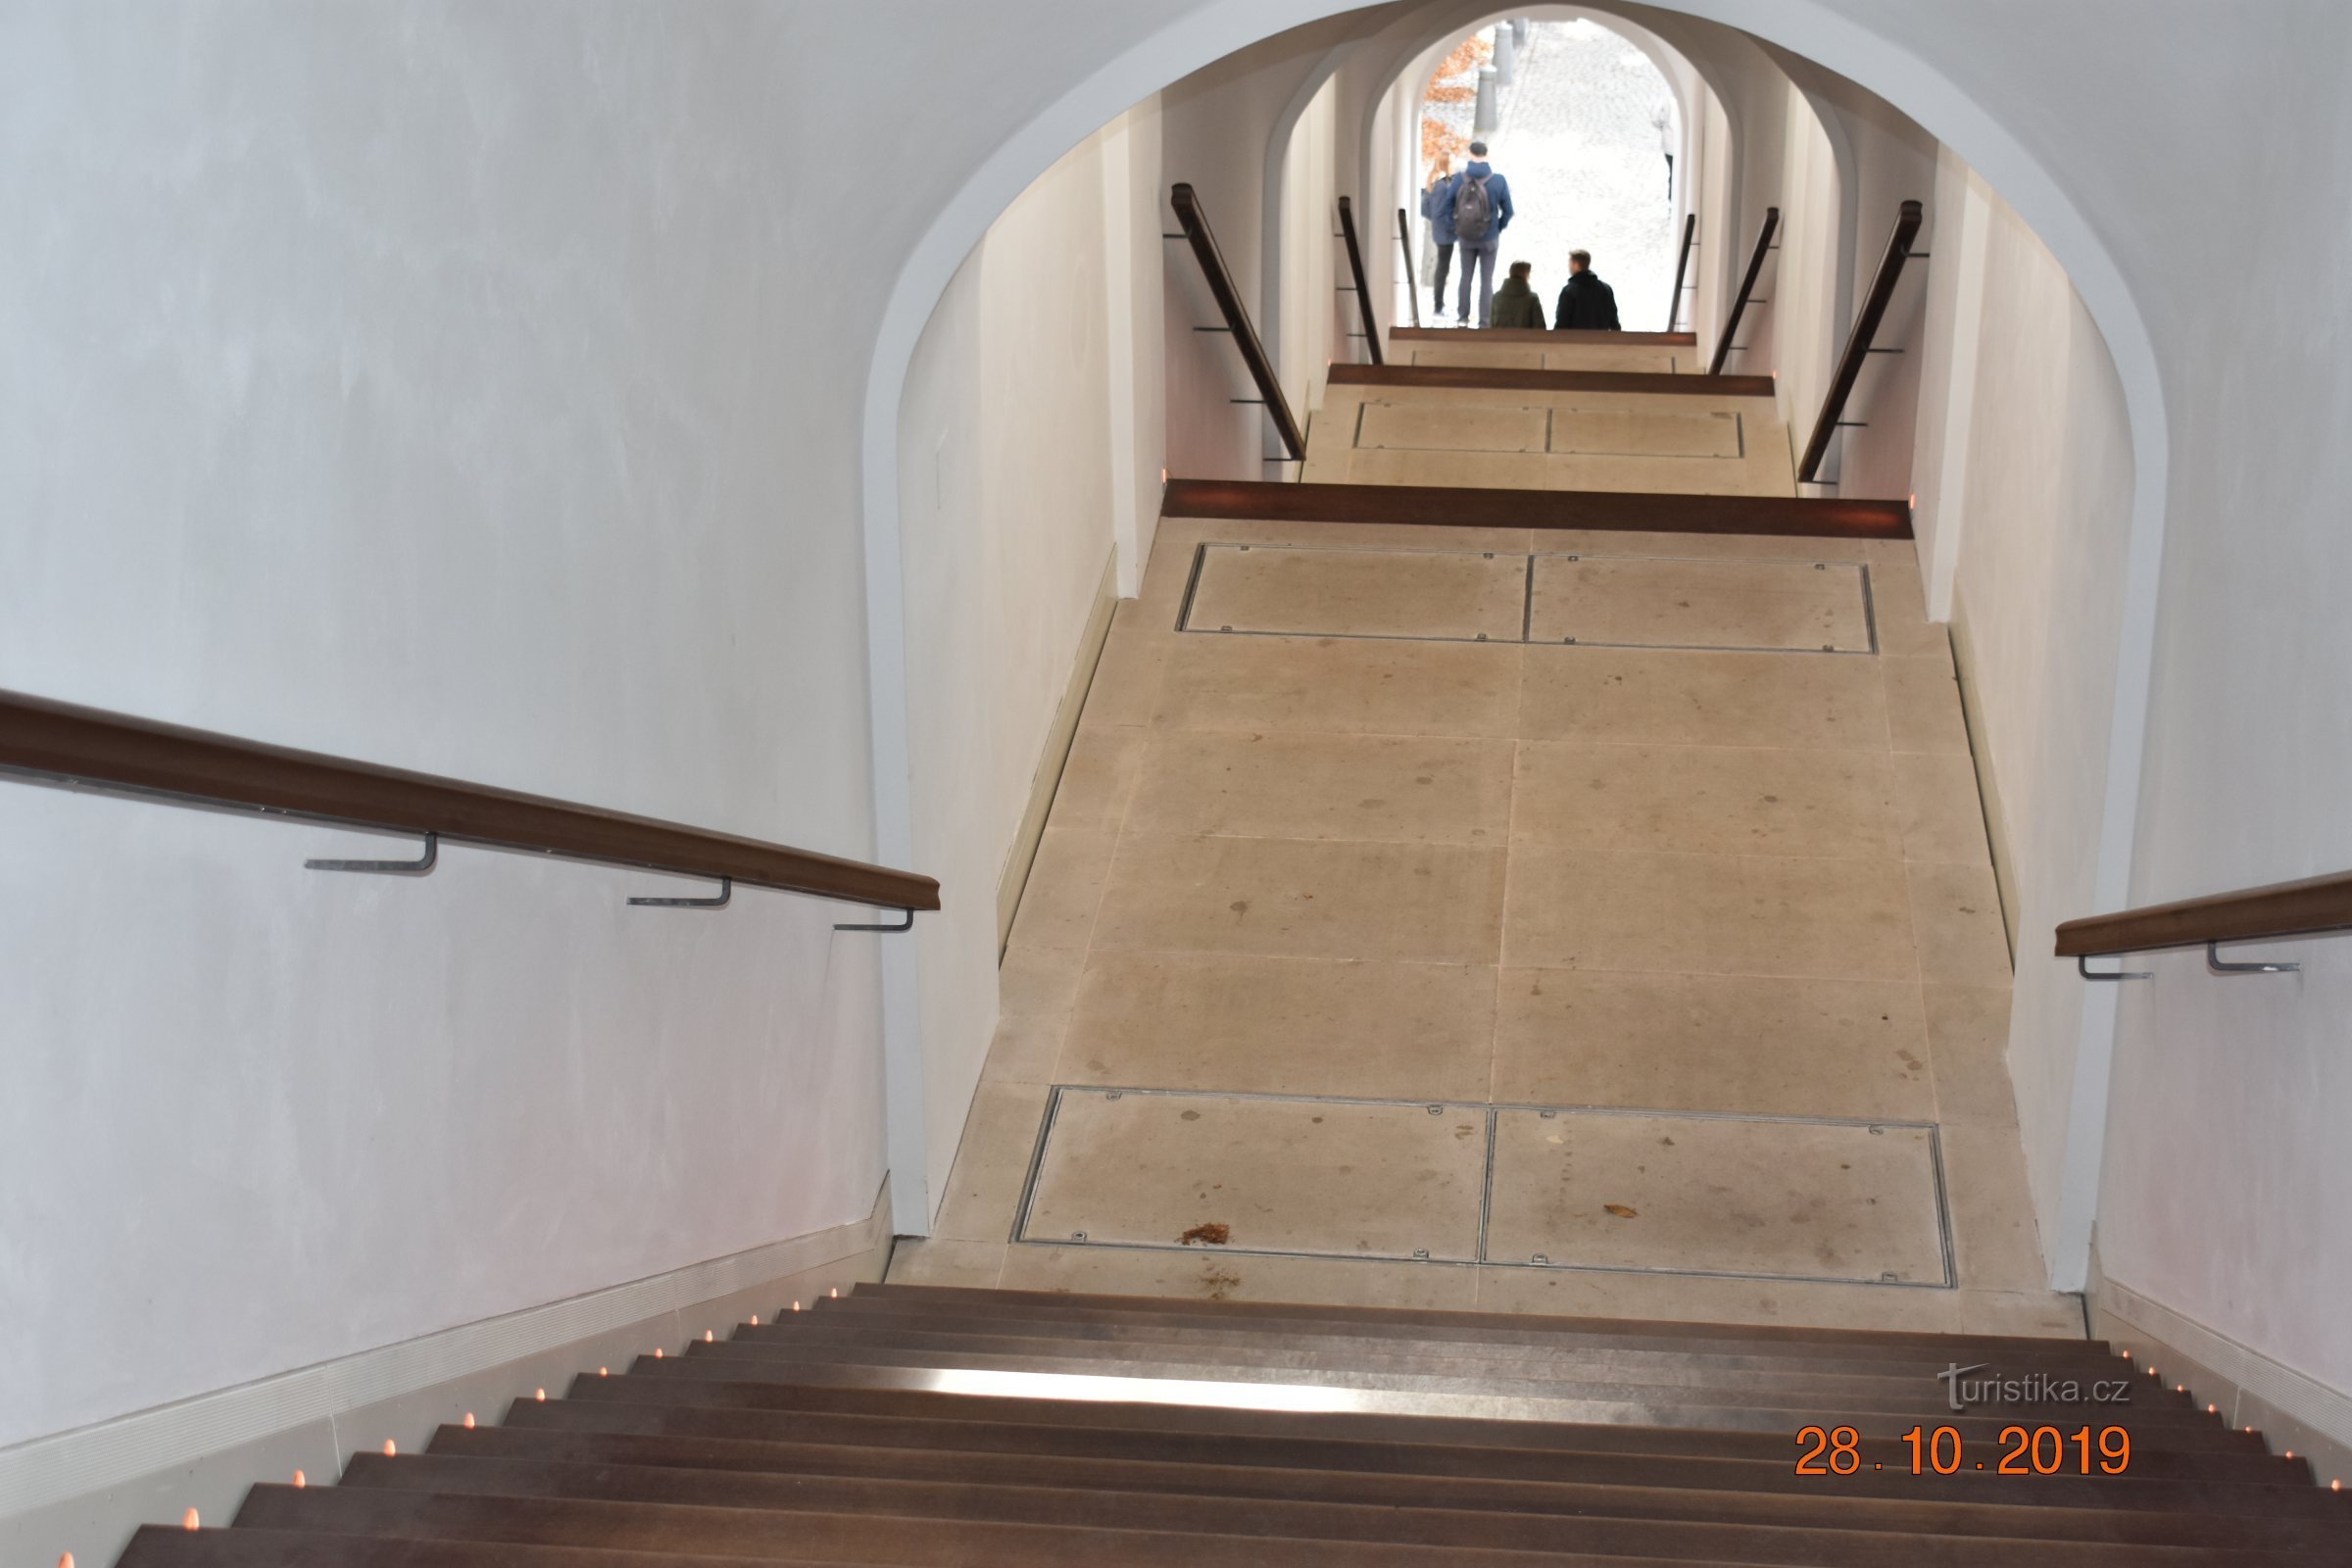 2019 年重建后 Hradec Králové 的 Bono publico 楼梯